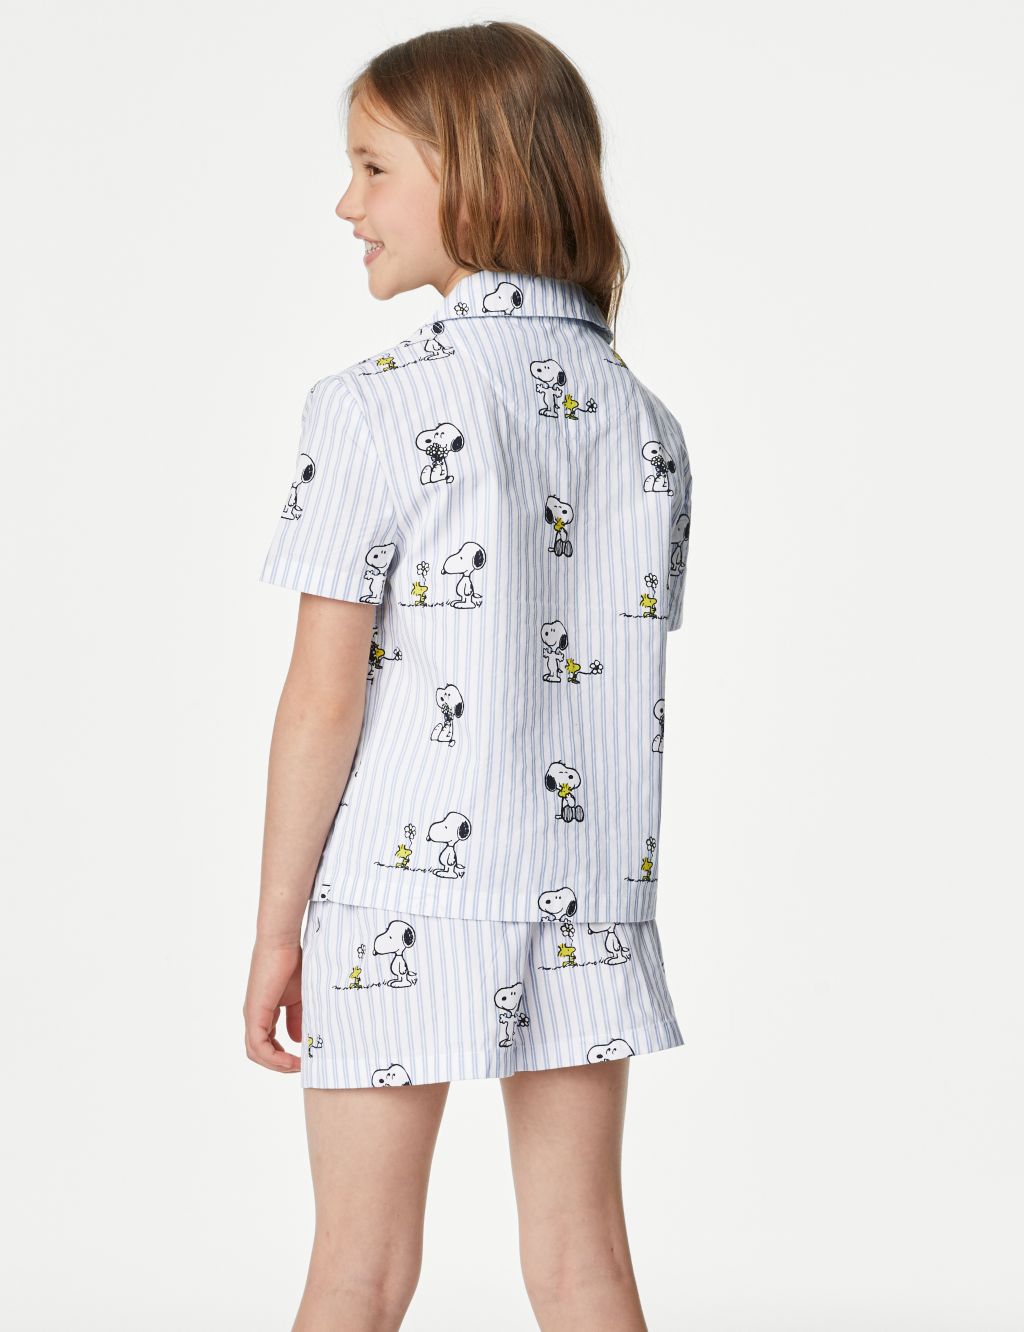 Snoopy™ Striped Pyjama Set (6-16 Yrs) image 4